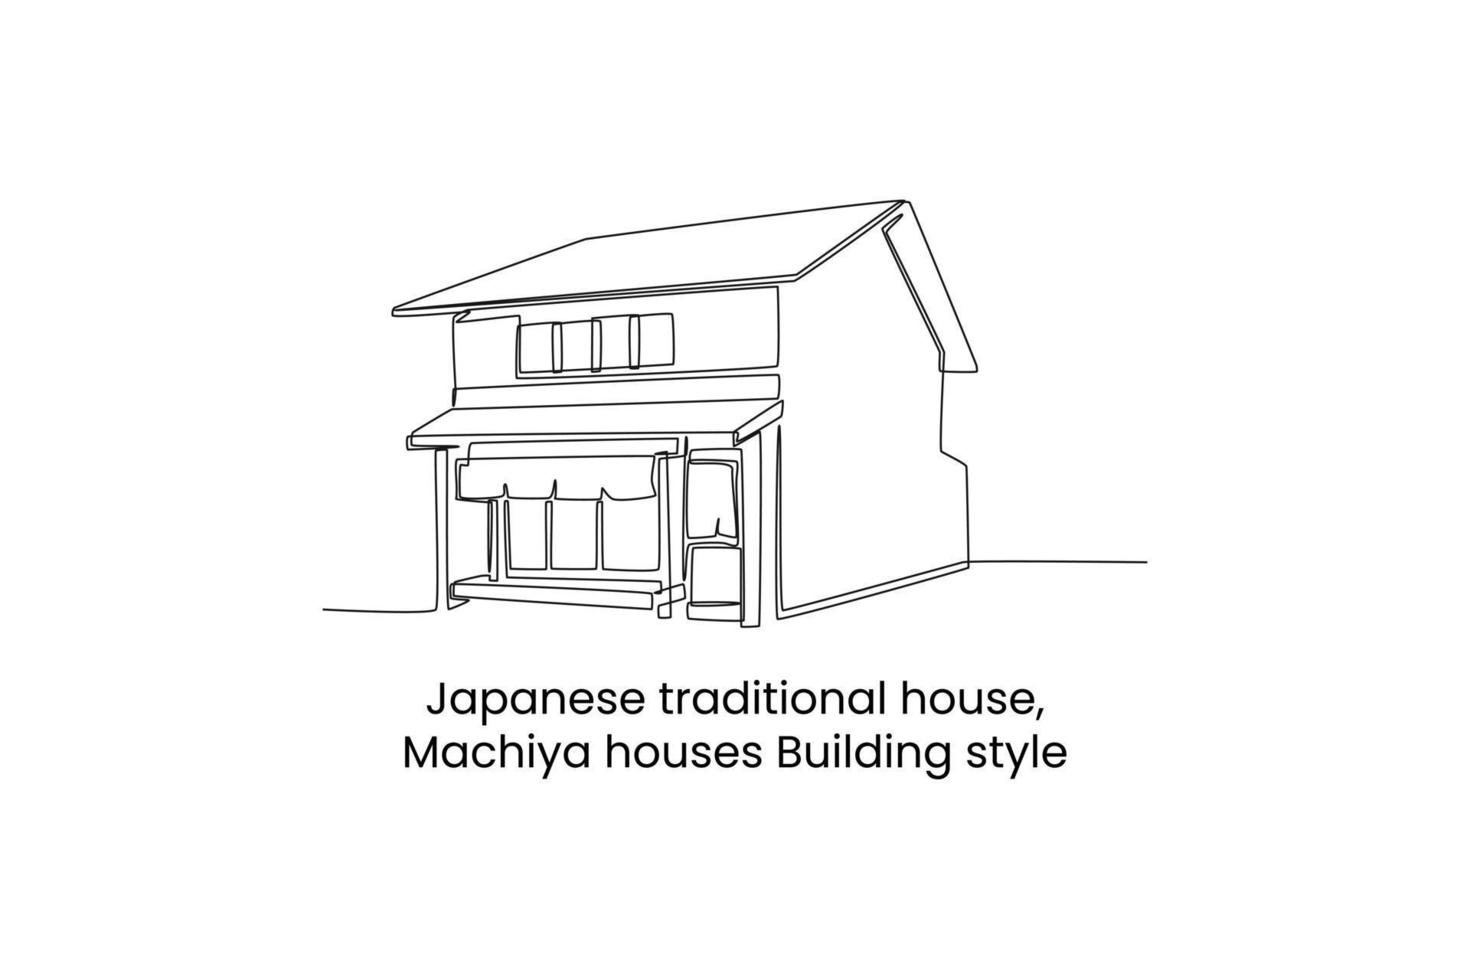 single een lijn tekening machiya huizen gebouw stijl in Japan. traditioneel huis concept. doorlopend lijn trek ontwerp grafisch vector illustratie.